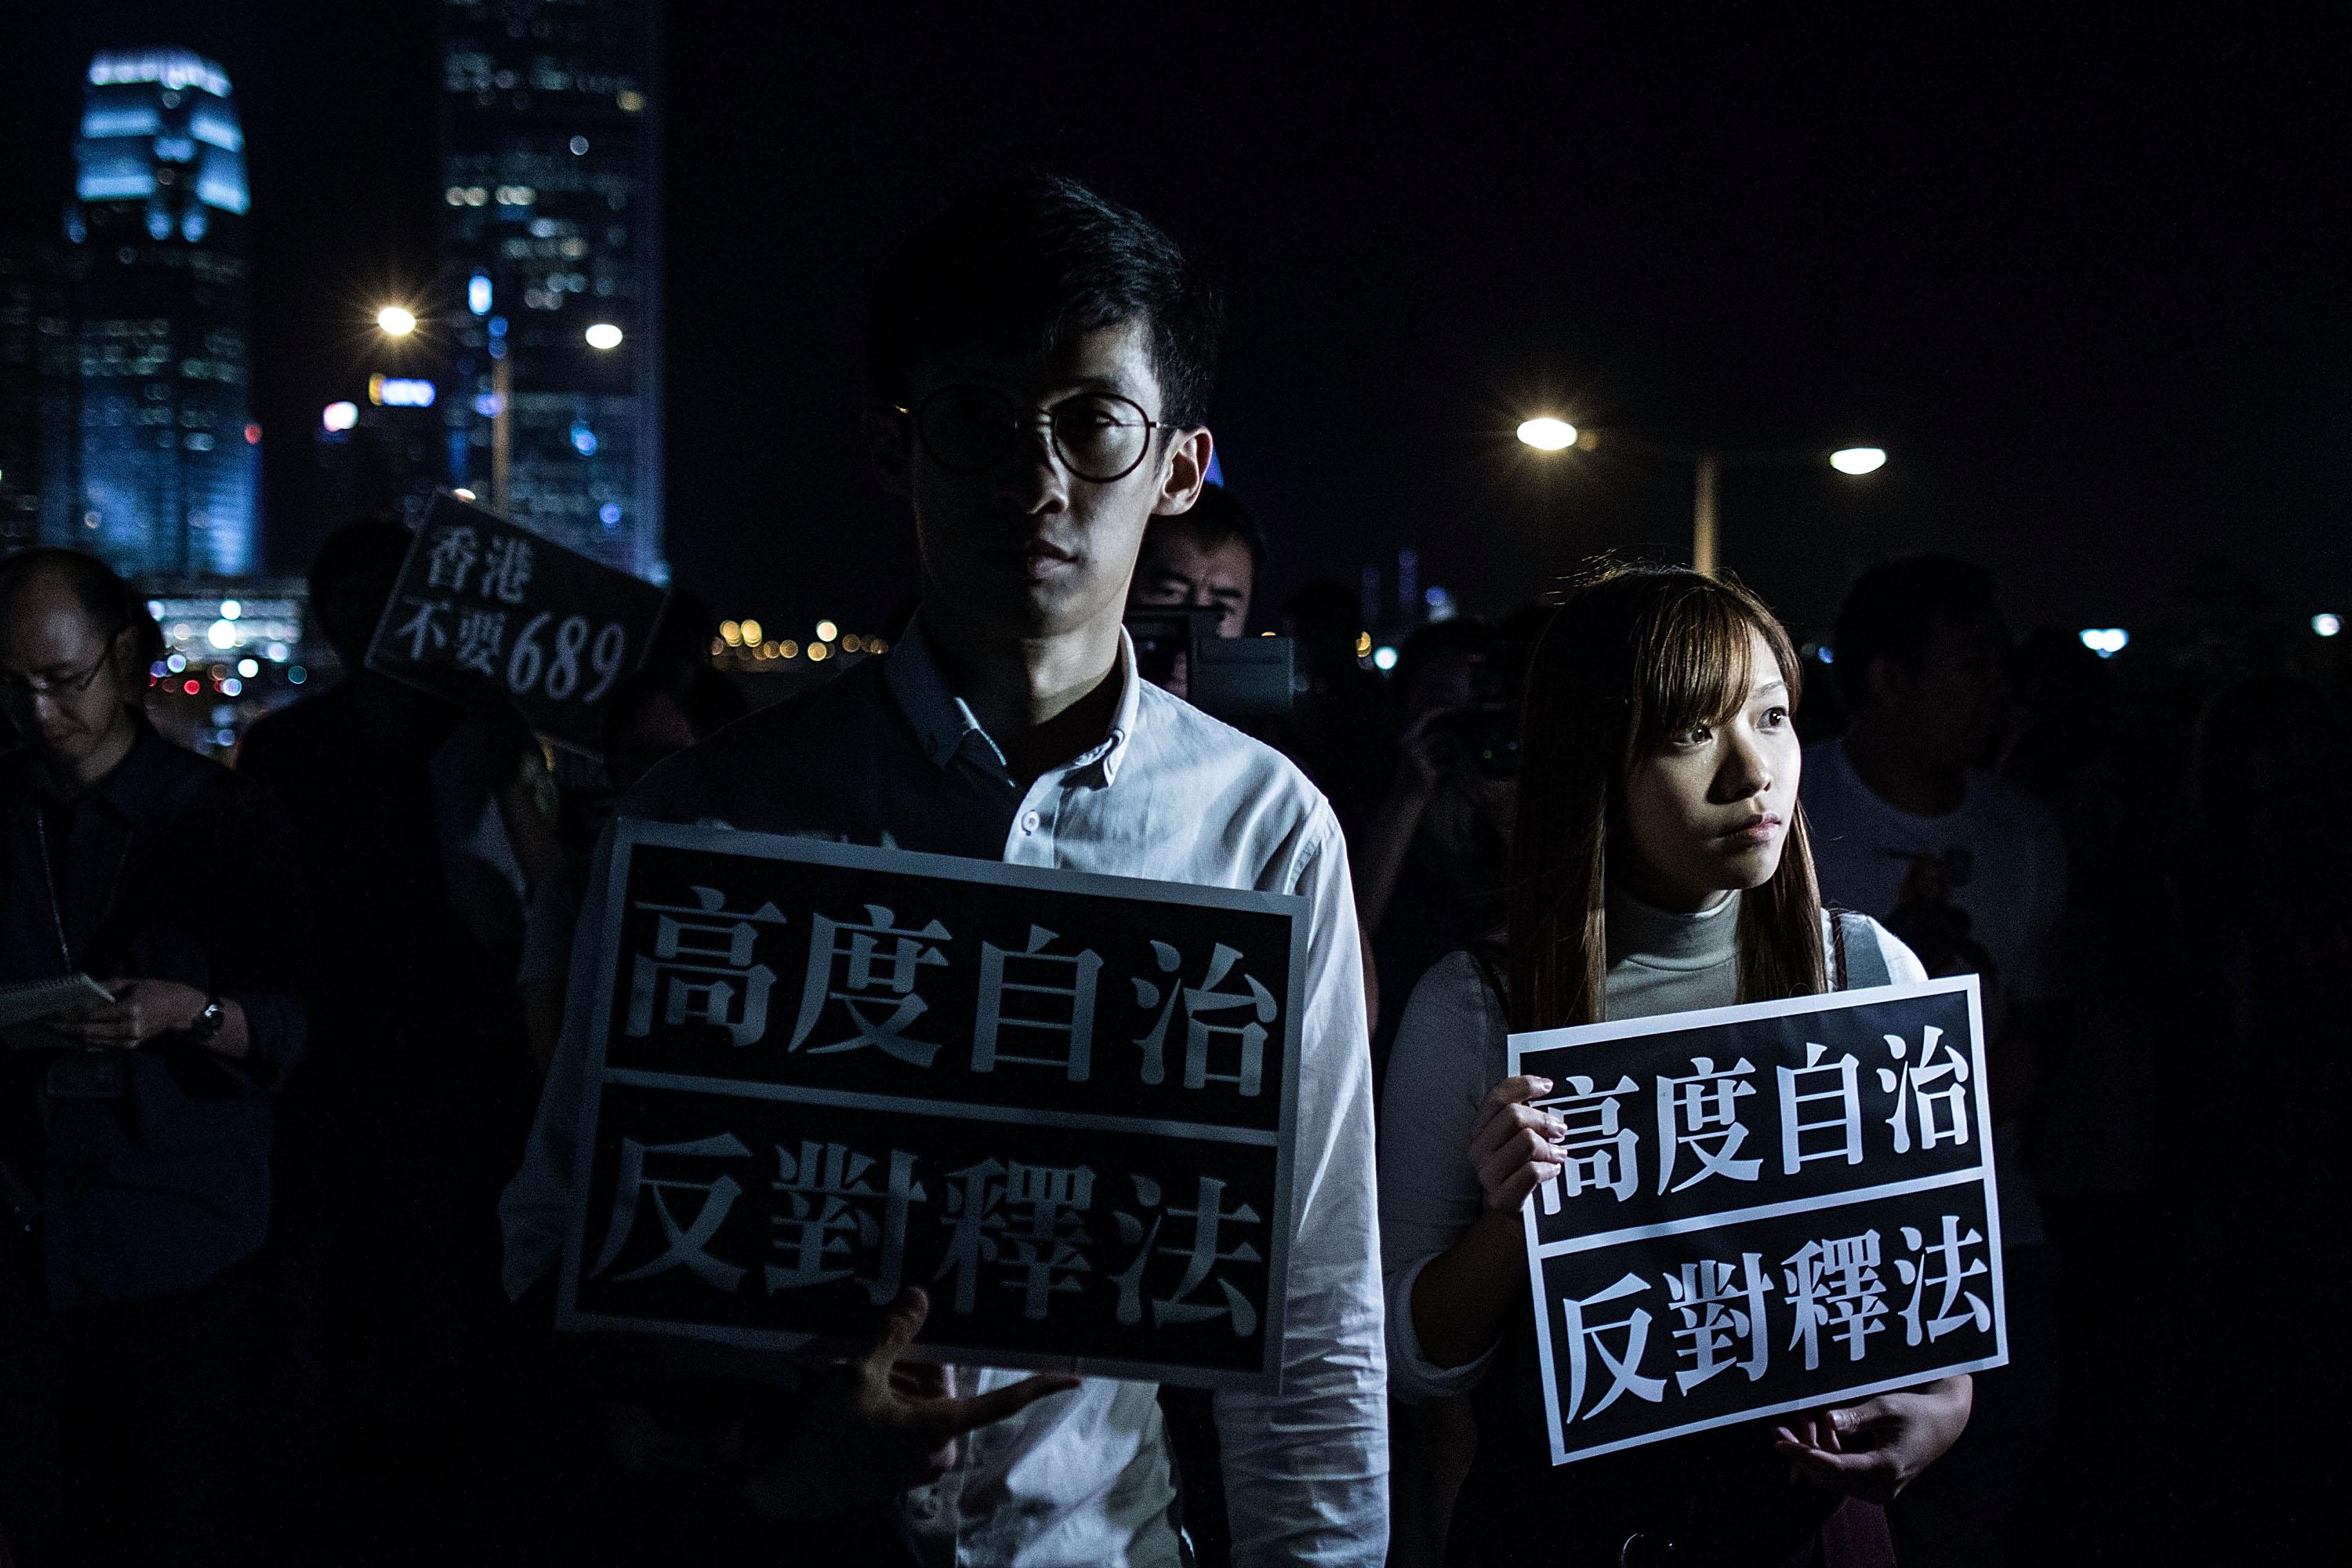 Sixtus Leung och Yau Wai-ching, som protesterade mot Kina när de svor sin ämbetsed, kommer nu att förlora sina platser i Hongkongs parlament enligt ett domstolsutslag. (Foto: Lam Yik Fei/Getty Images)